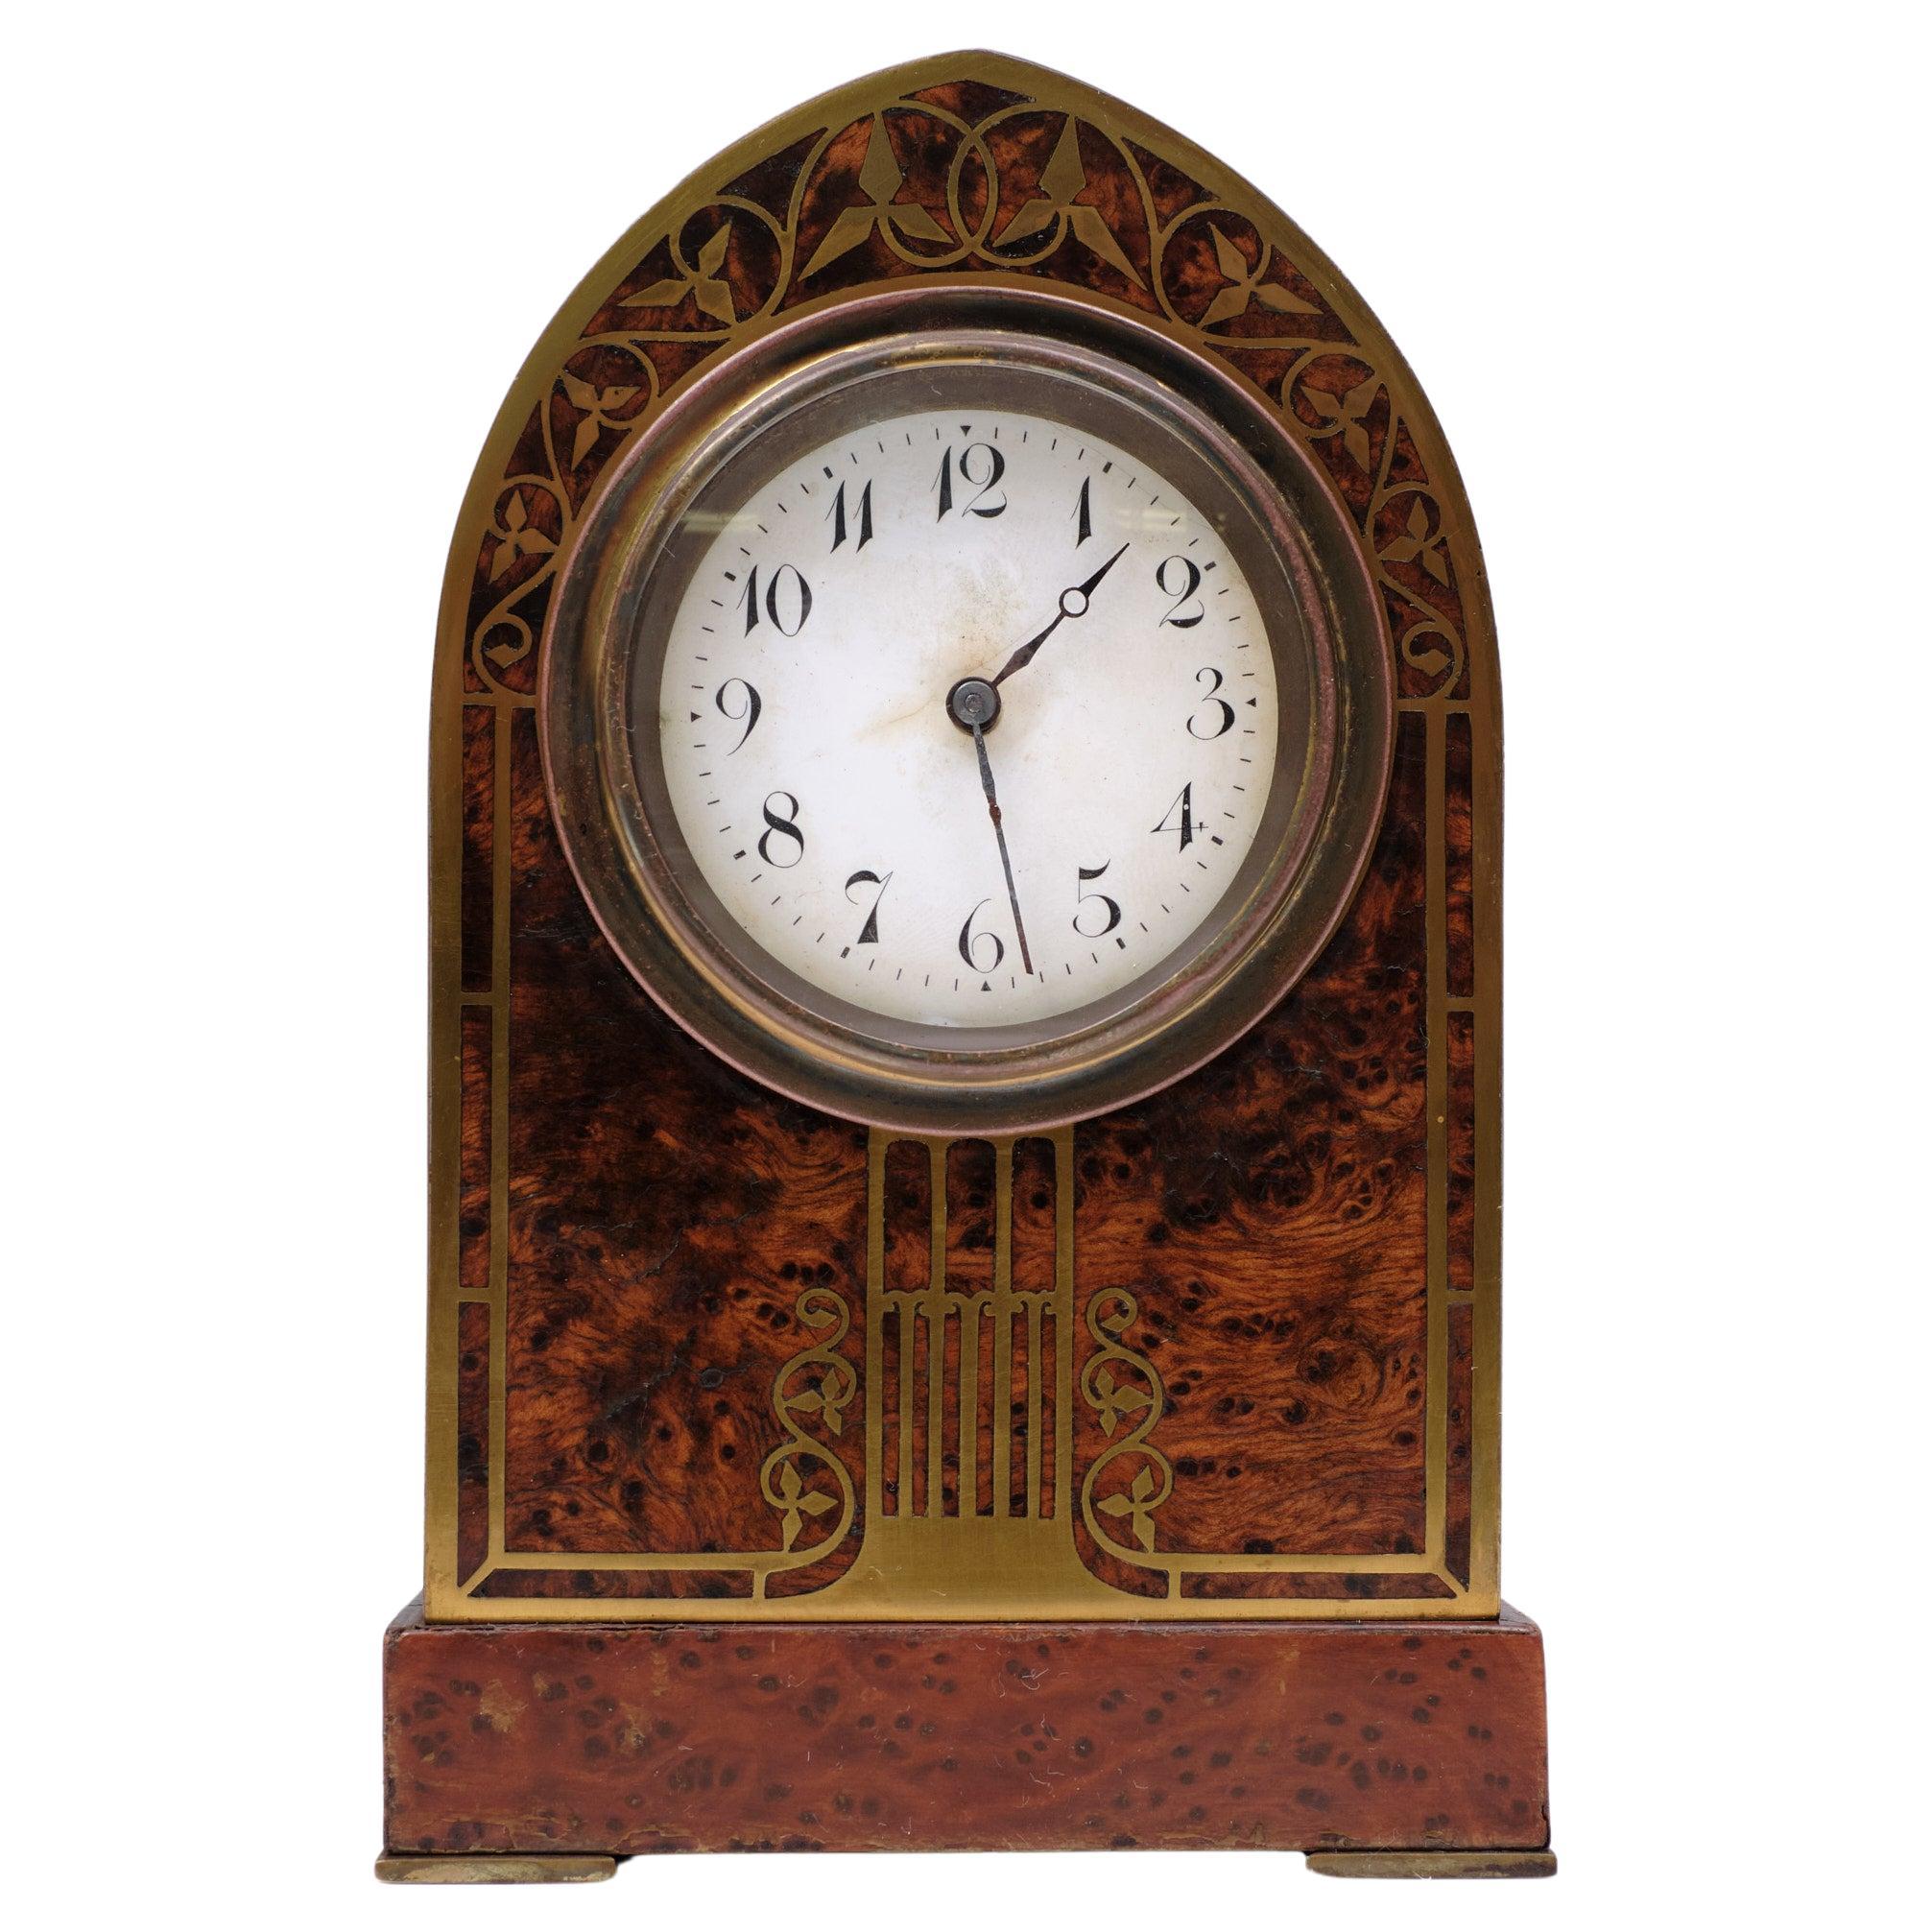 Magnifique  Horloge de bureau Art Nouveau .fabriqué par  Erhard & Söhne
en Autriche 1910 Bois de ronce avec  Incrustation en laiton . Superbe travail d'artisan.
Le mouvement était usé. Je l'ai donc envoyé à un très bon horloger belge.
Et maintenant,